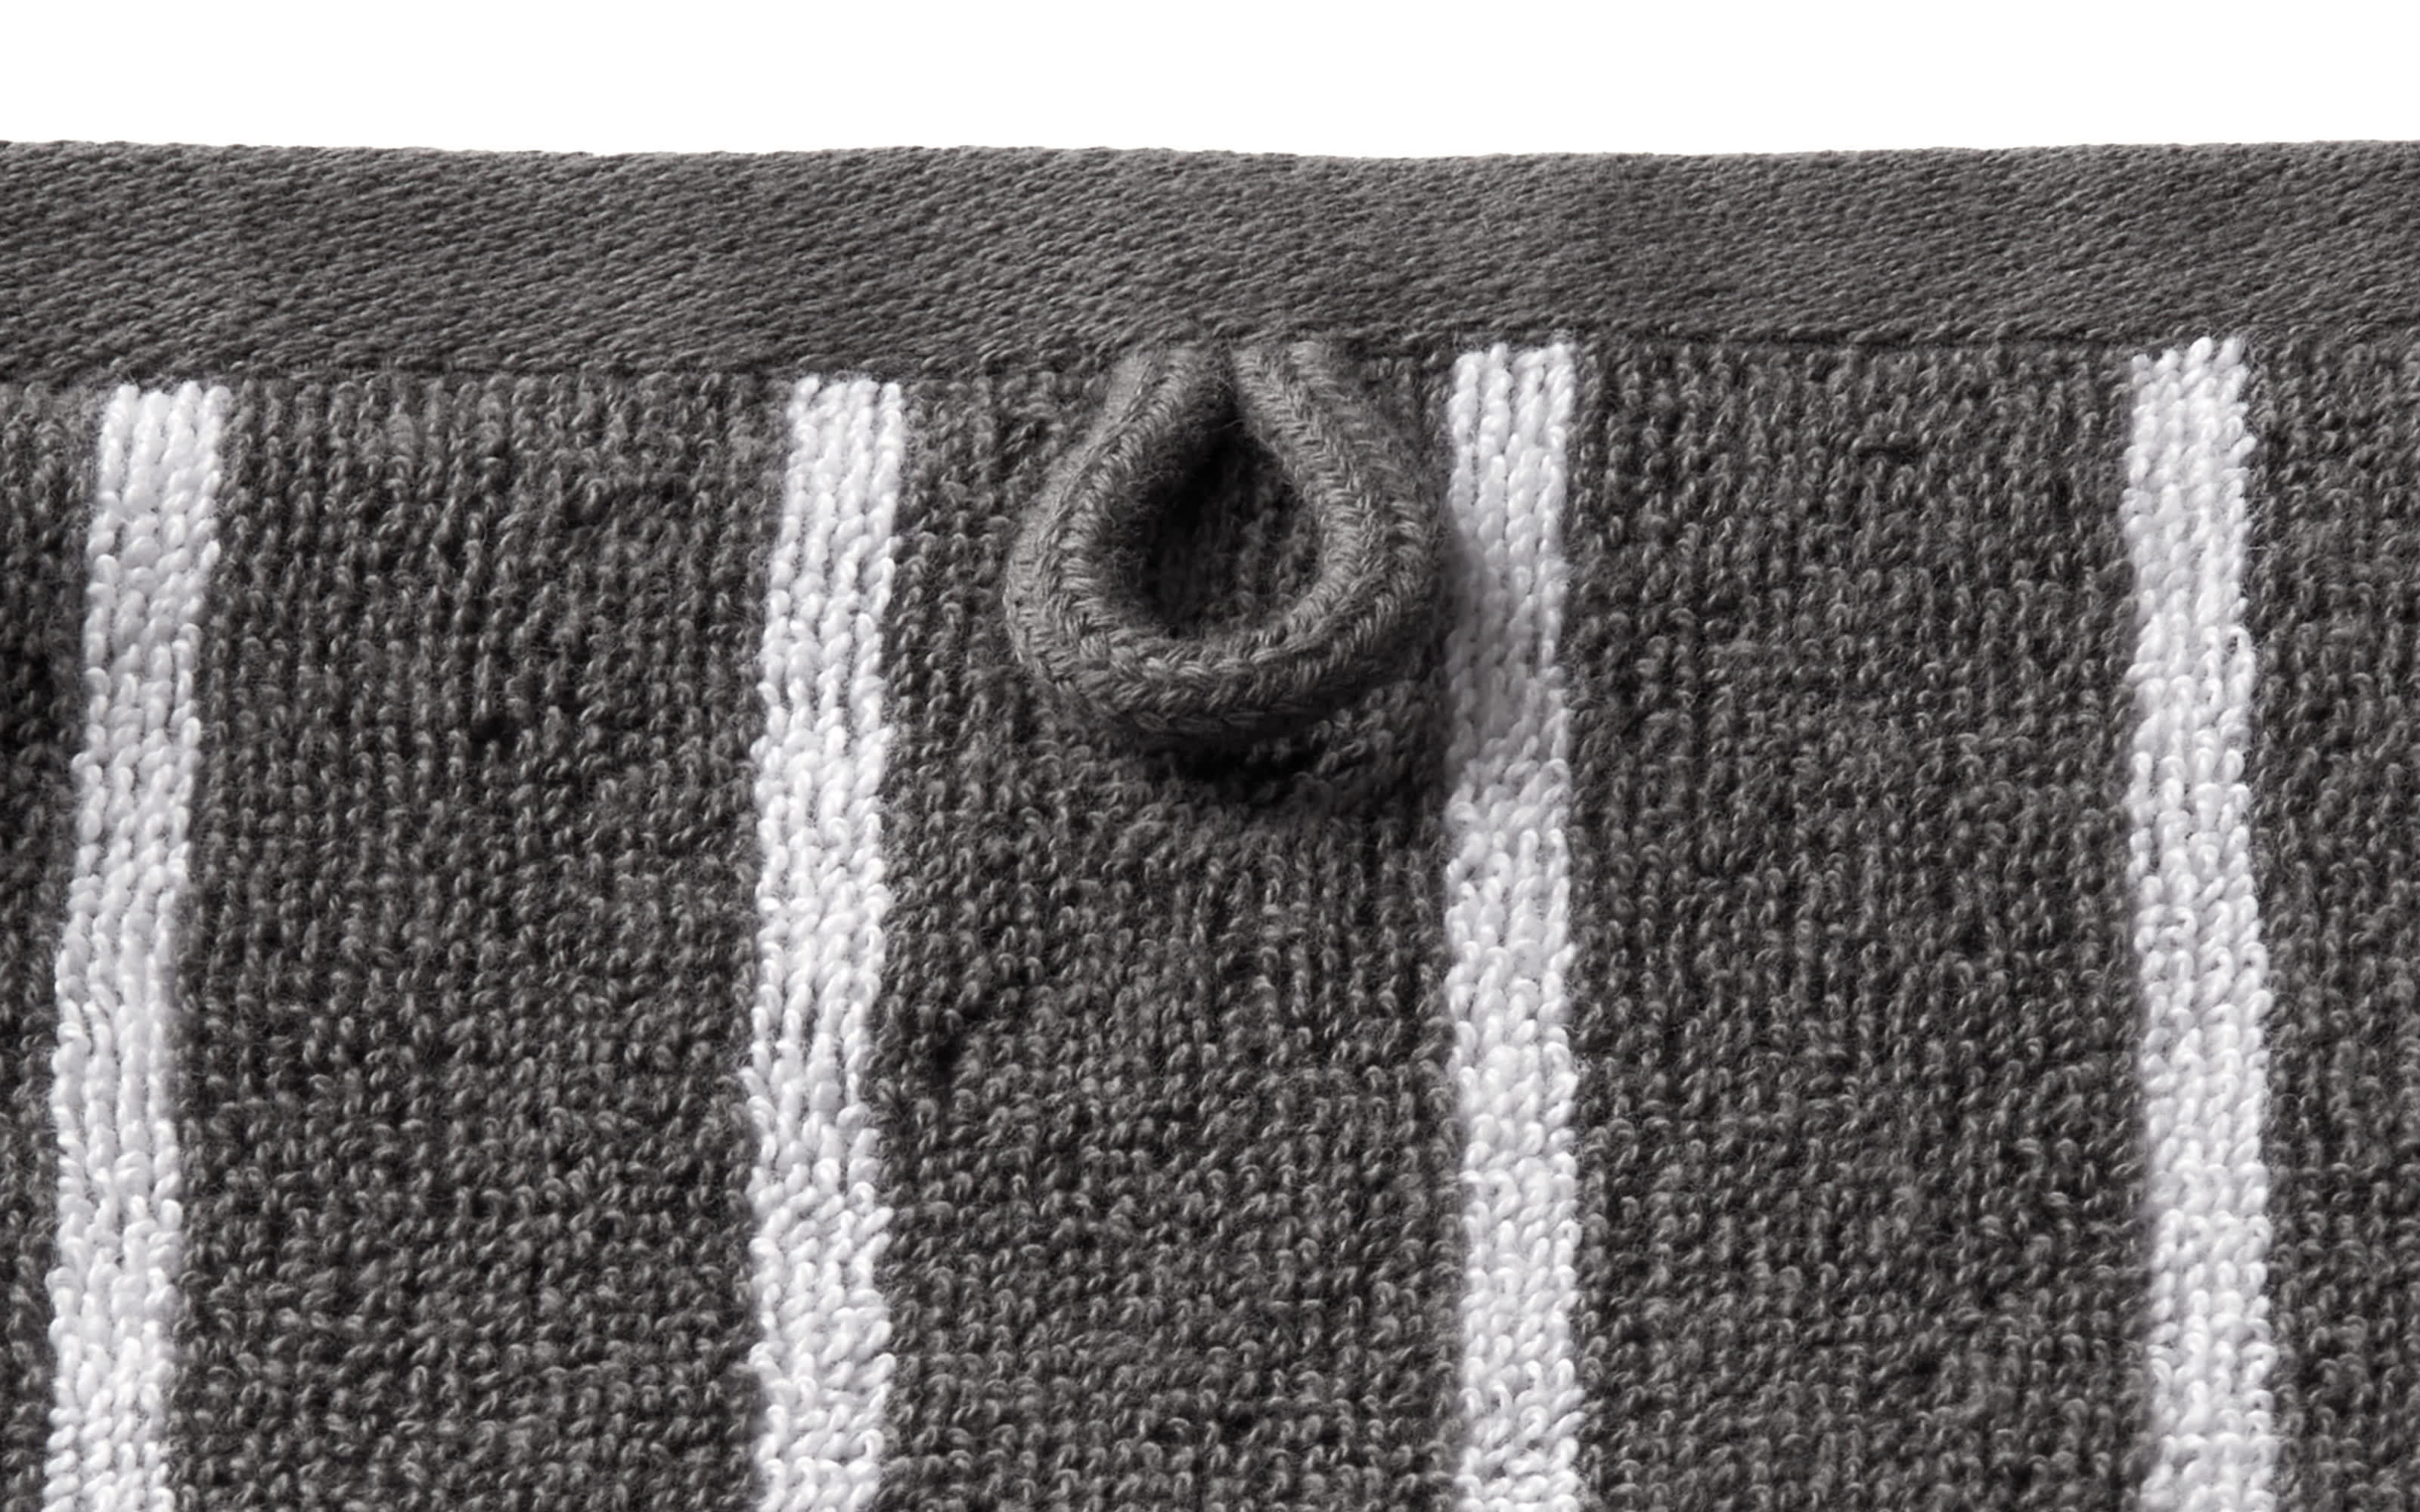 Handtuch Needlestripe, anthrazit, 50 x 100 cm